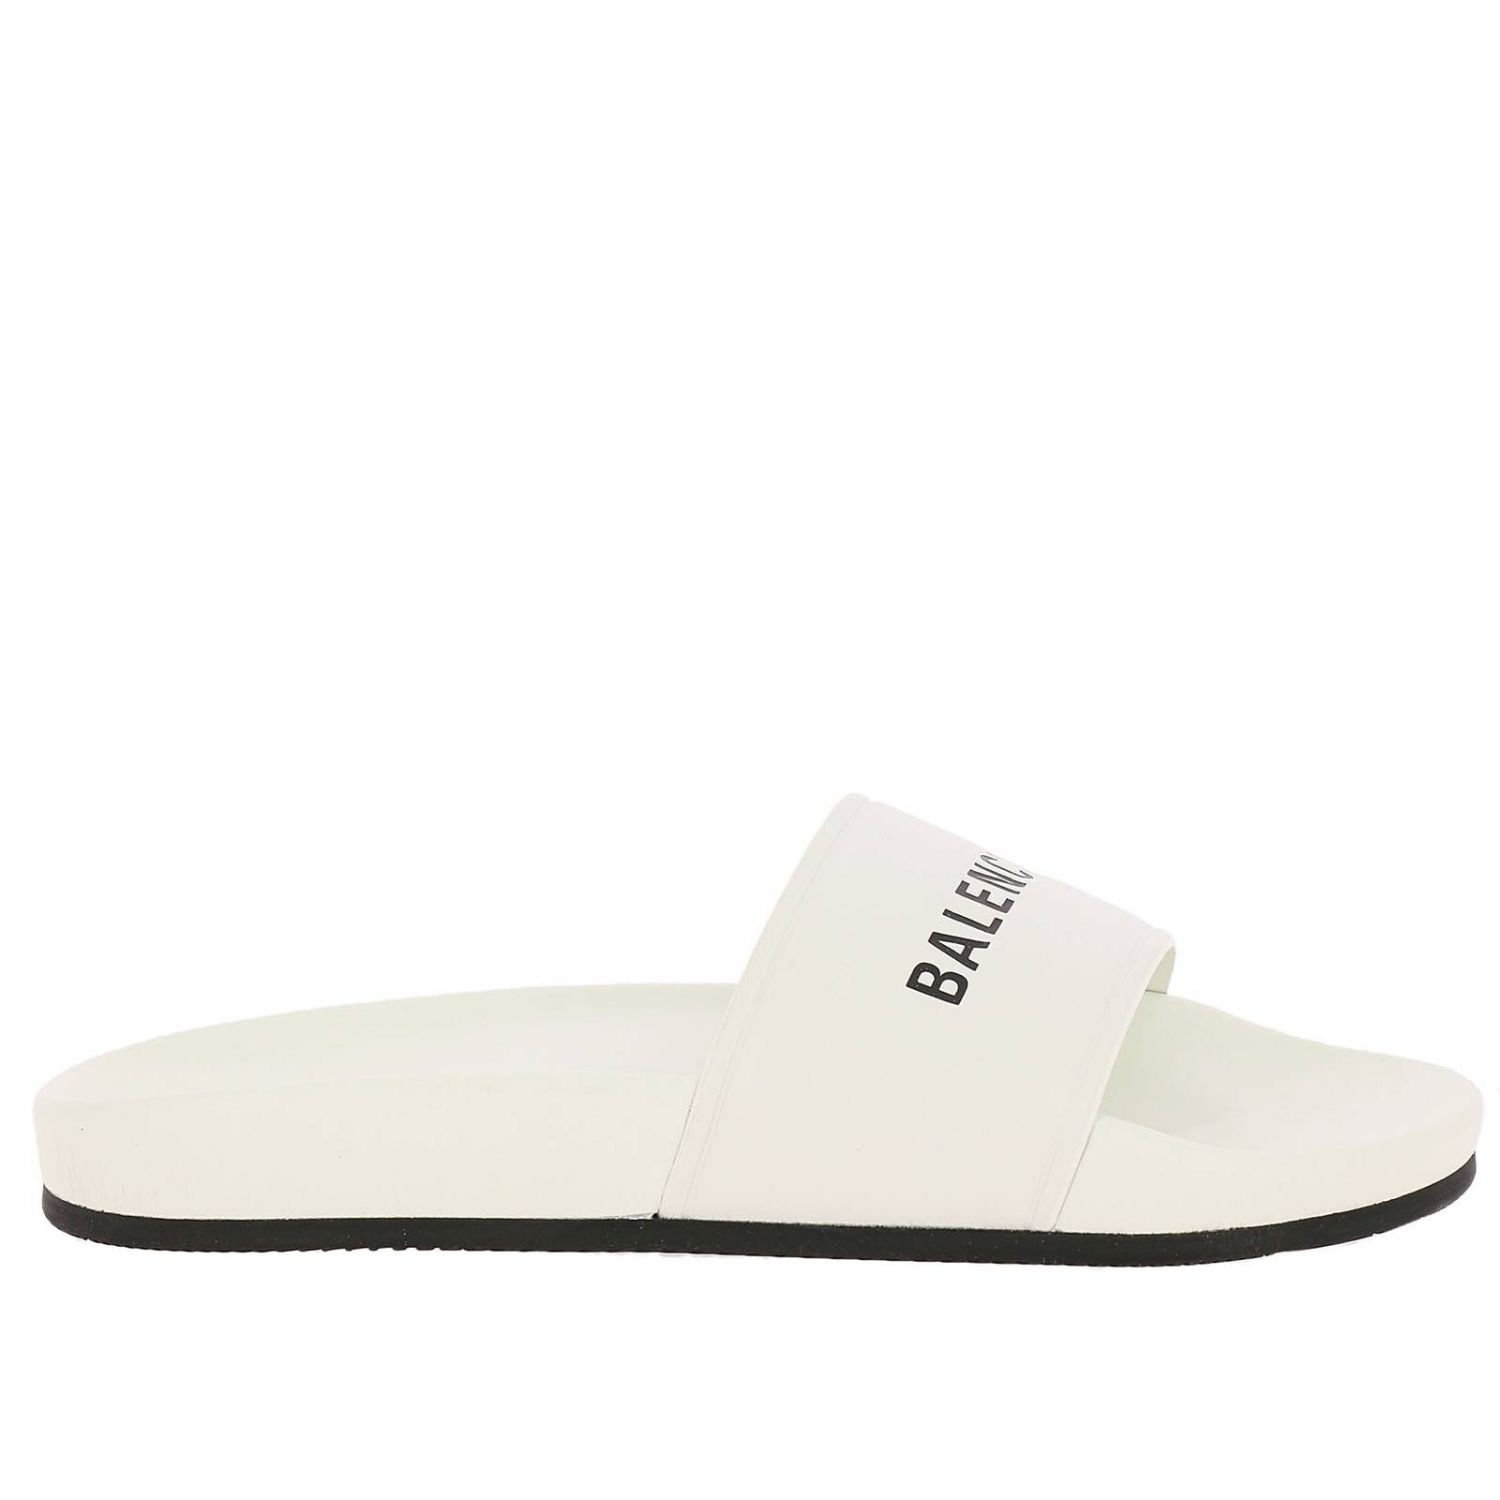 Shoes women Balenciaga | Flat Sandals Balenciaga Women White | Flat ...